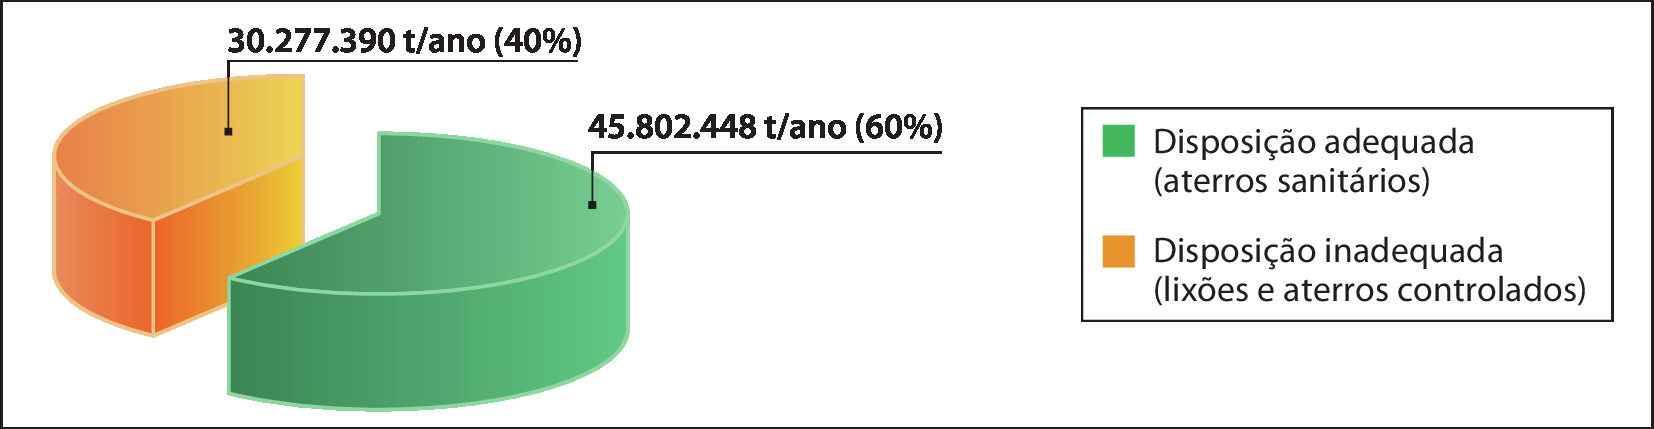 Gráfico de setores. Em verde: disposição adequada (aterros sanitários): 45.802.448 toneladas por ano (60%). Em laranja: disposição inadequada (lixões e aterros controlados): 30.277.390 toneladas por ano (40%).